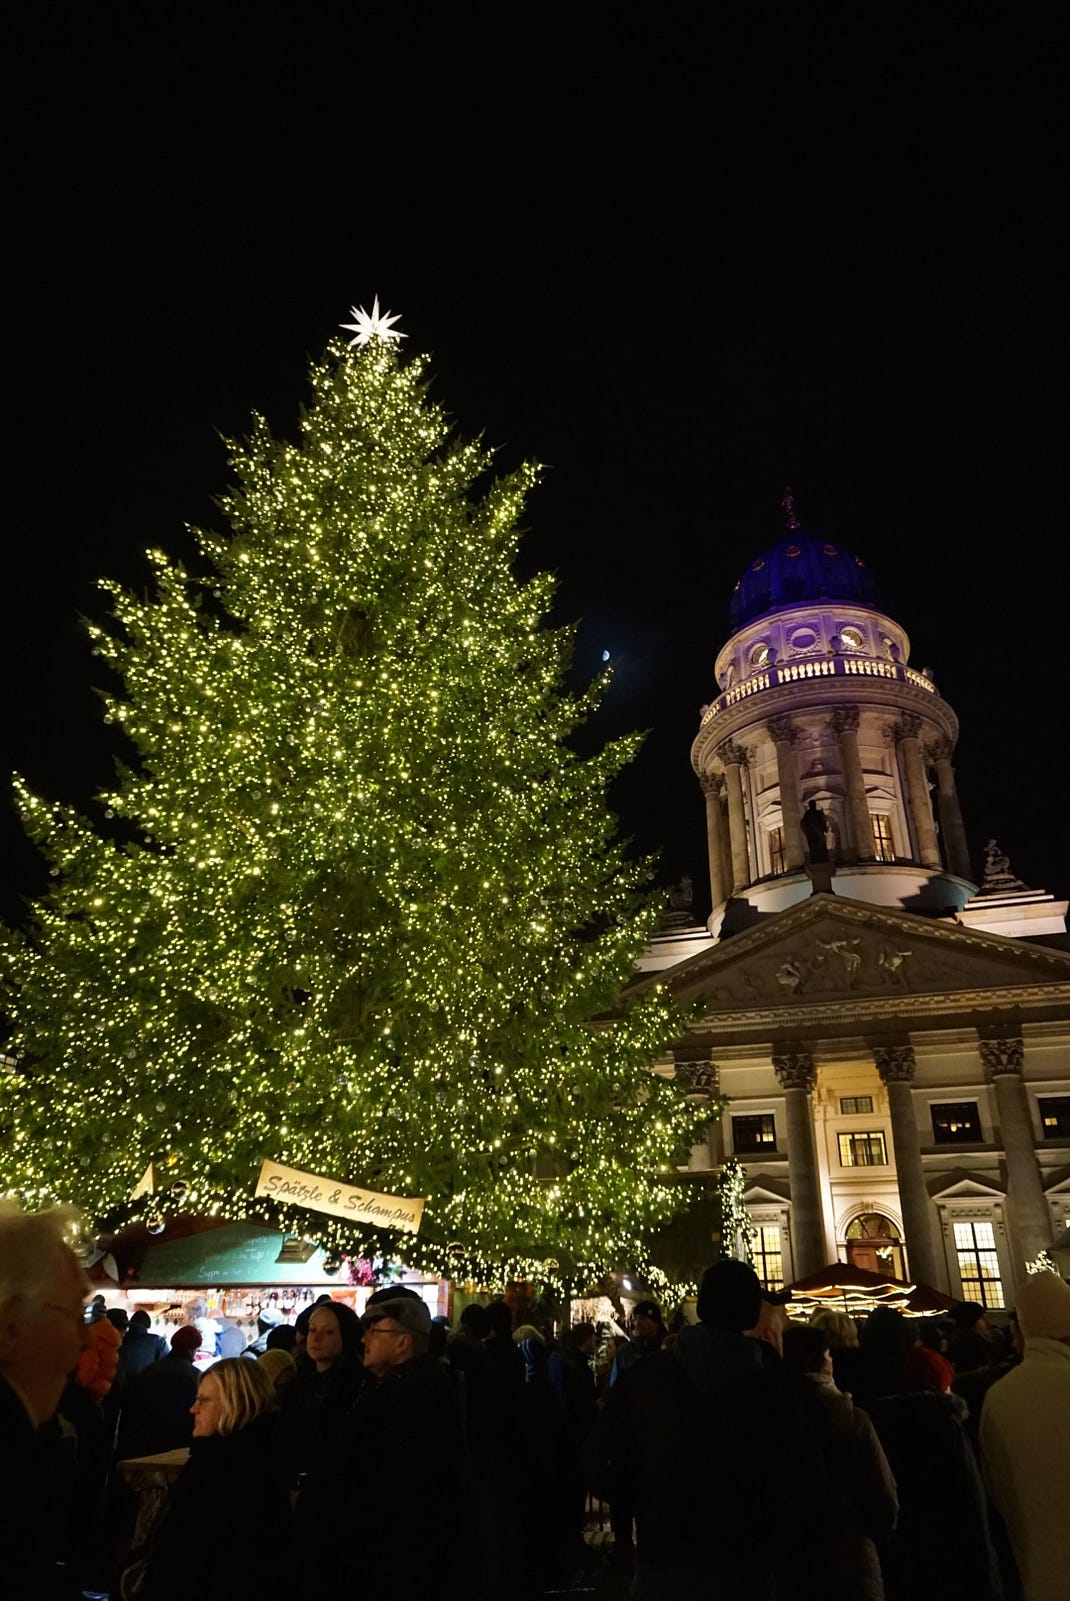 Gendermanmarkt berlin christmas tree